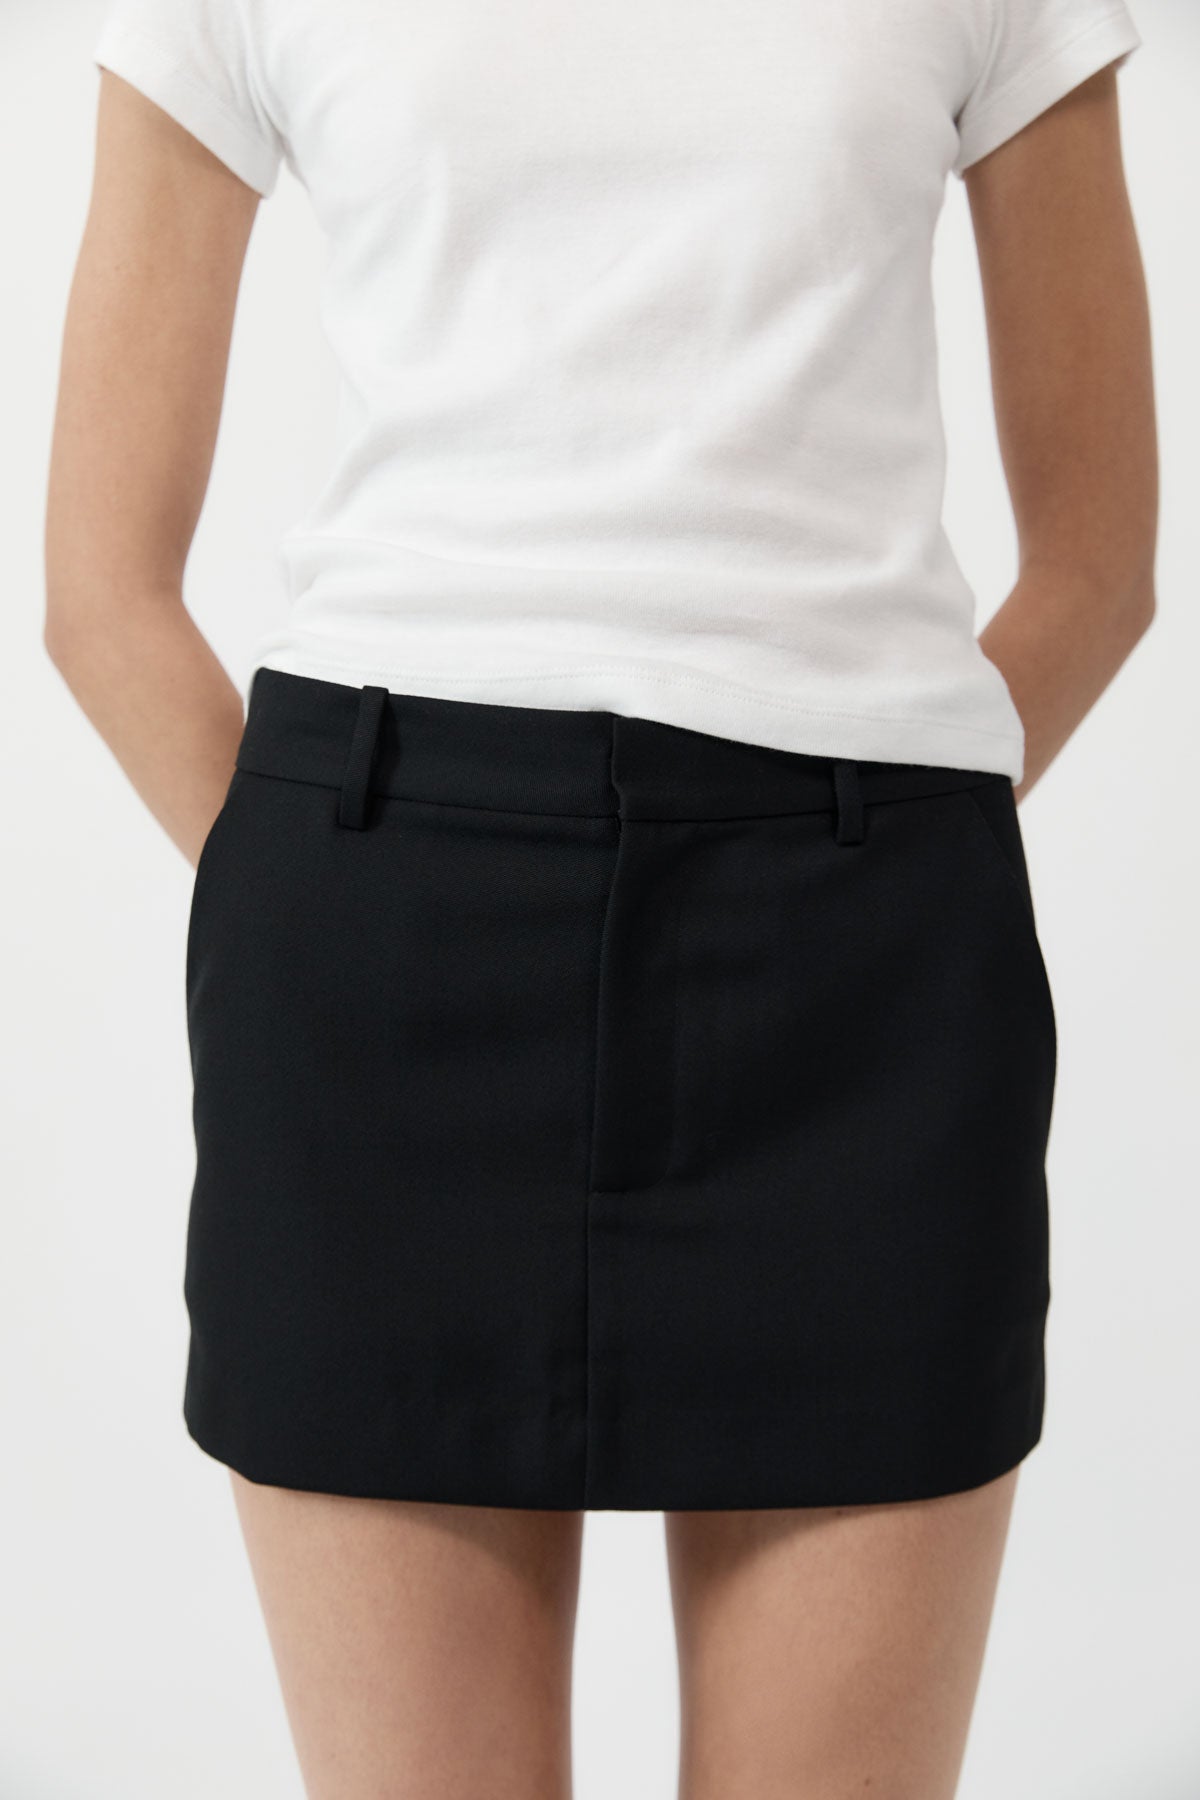 St. Agni | Carter Mini Skirt - Black